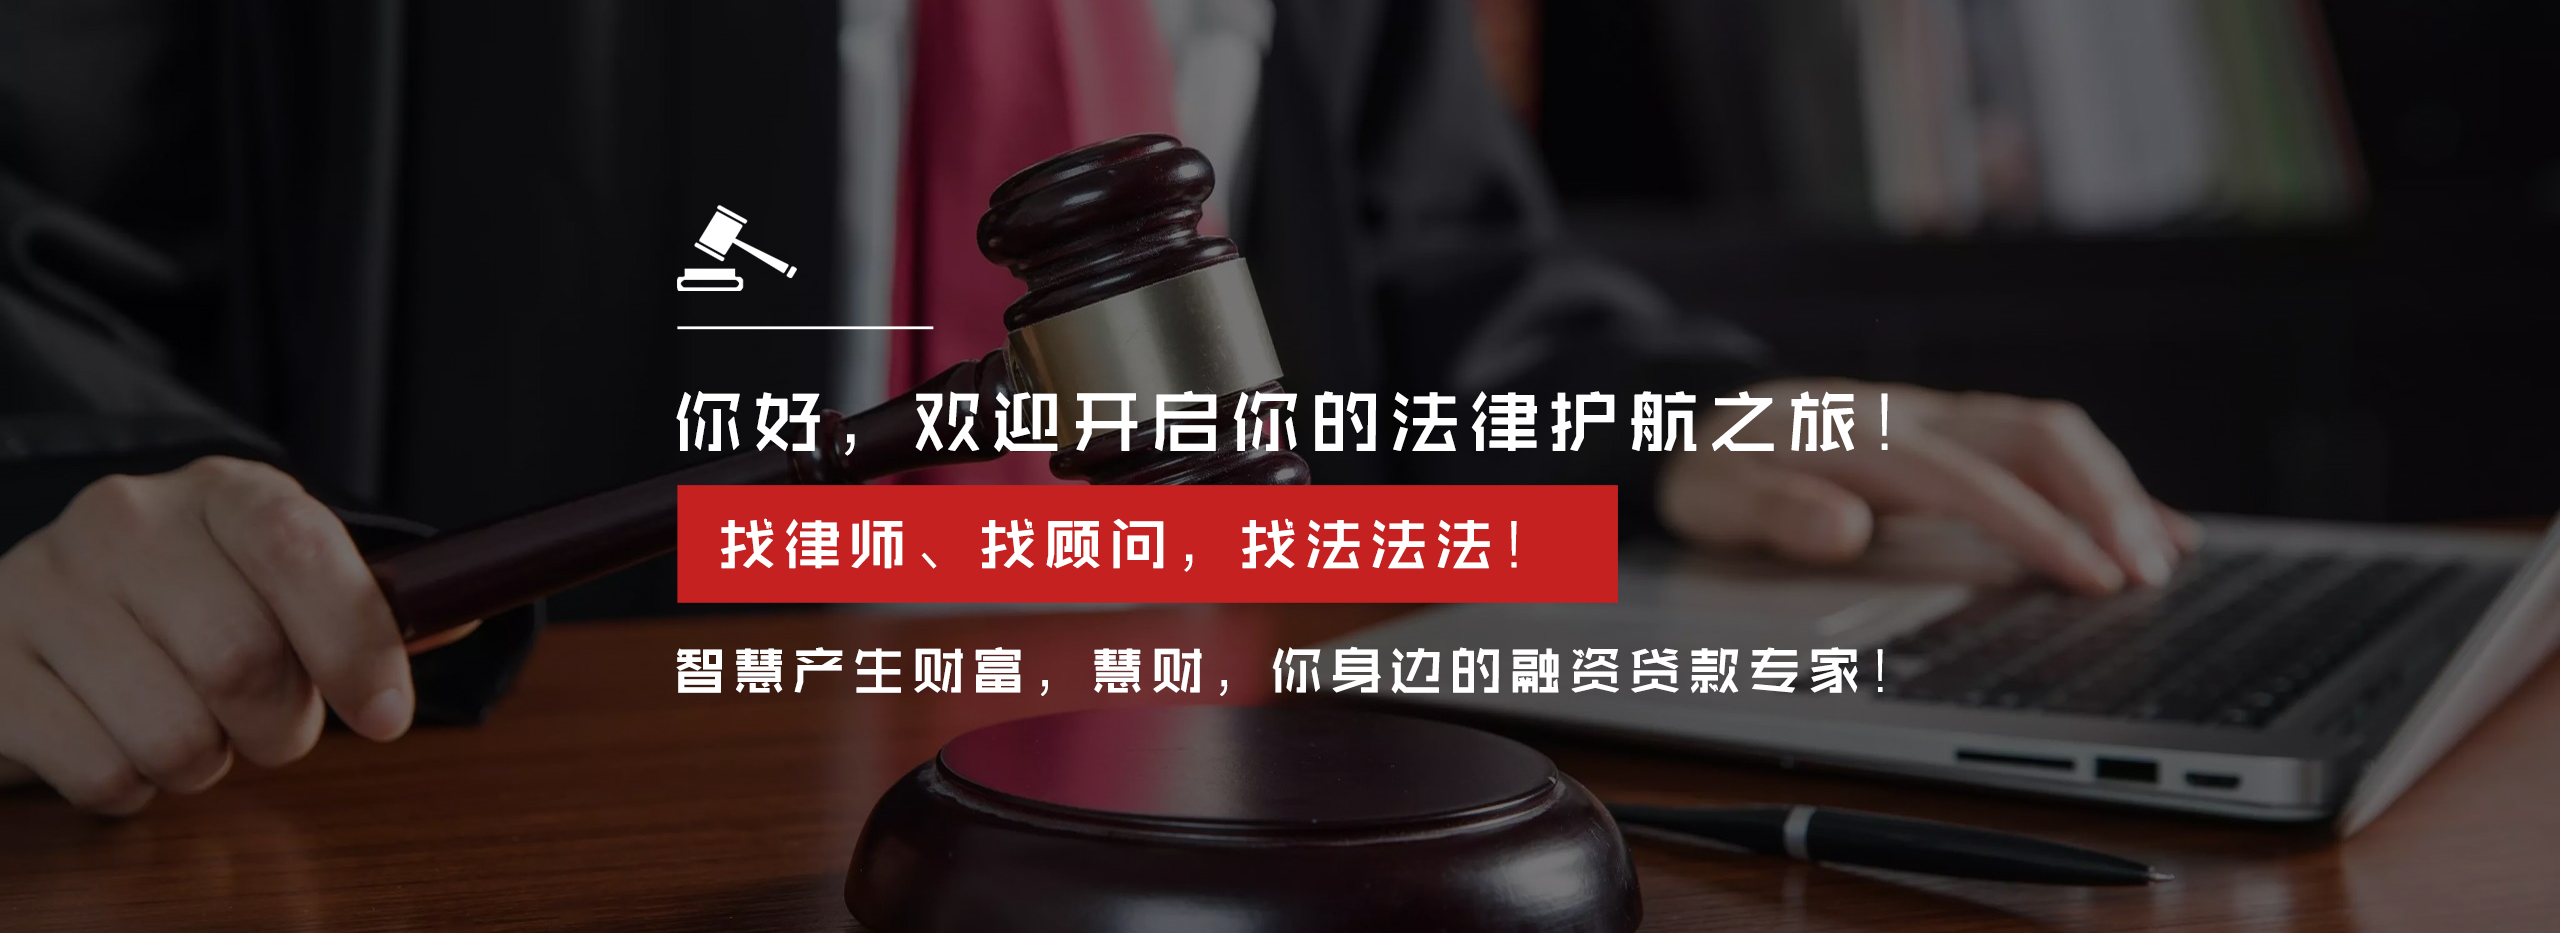 房产纠纷起诉流程_房产法律服务起诉流程-四川法法法信息科技有限公司